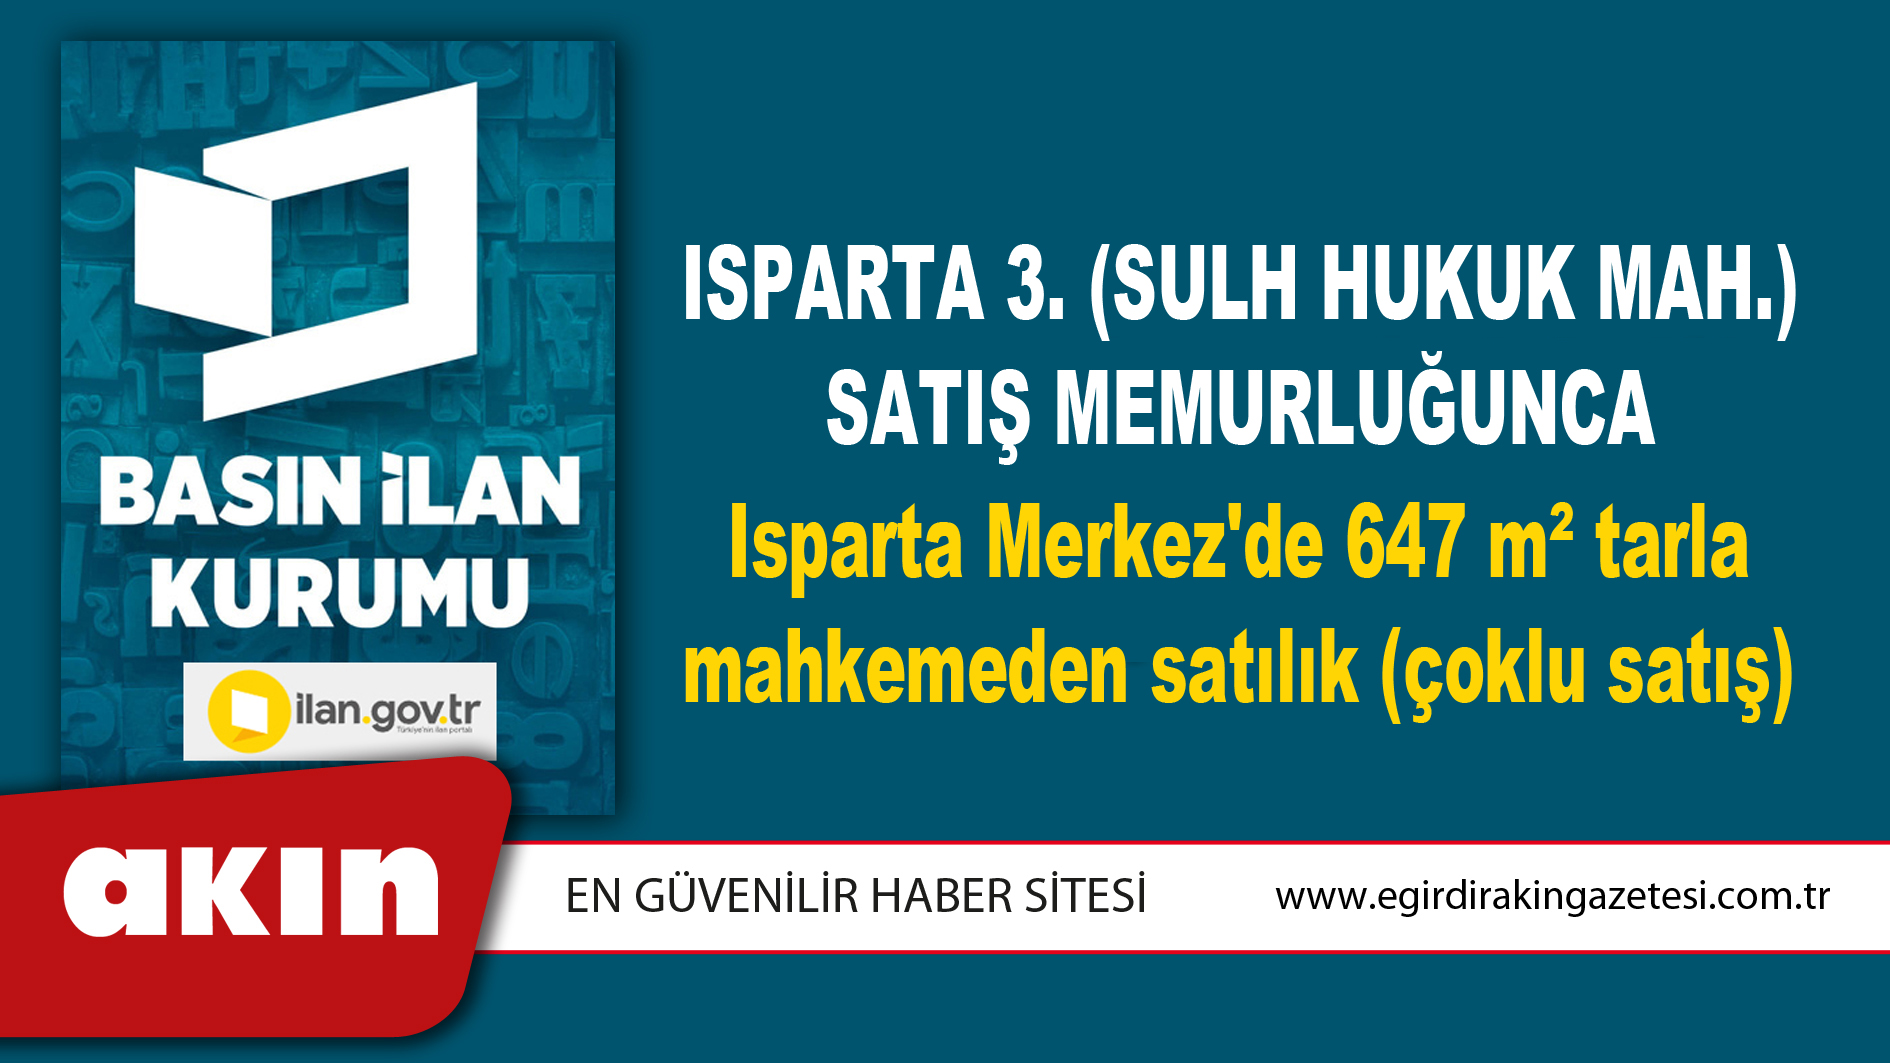 Isparta 3. (Sulh Hukuk Mah.) Satış Memurluğunca Isparta Merkez'de 647 m² tarla mahkemeden satılık (çoklu satış)